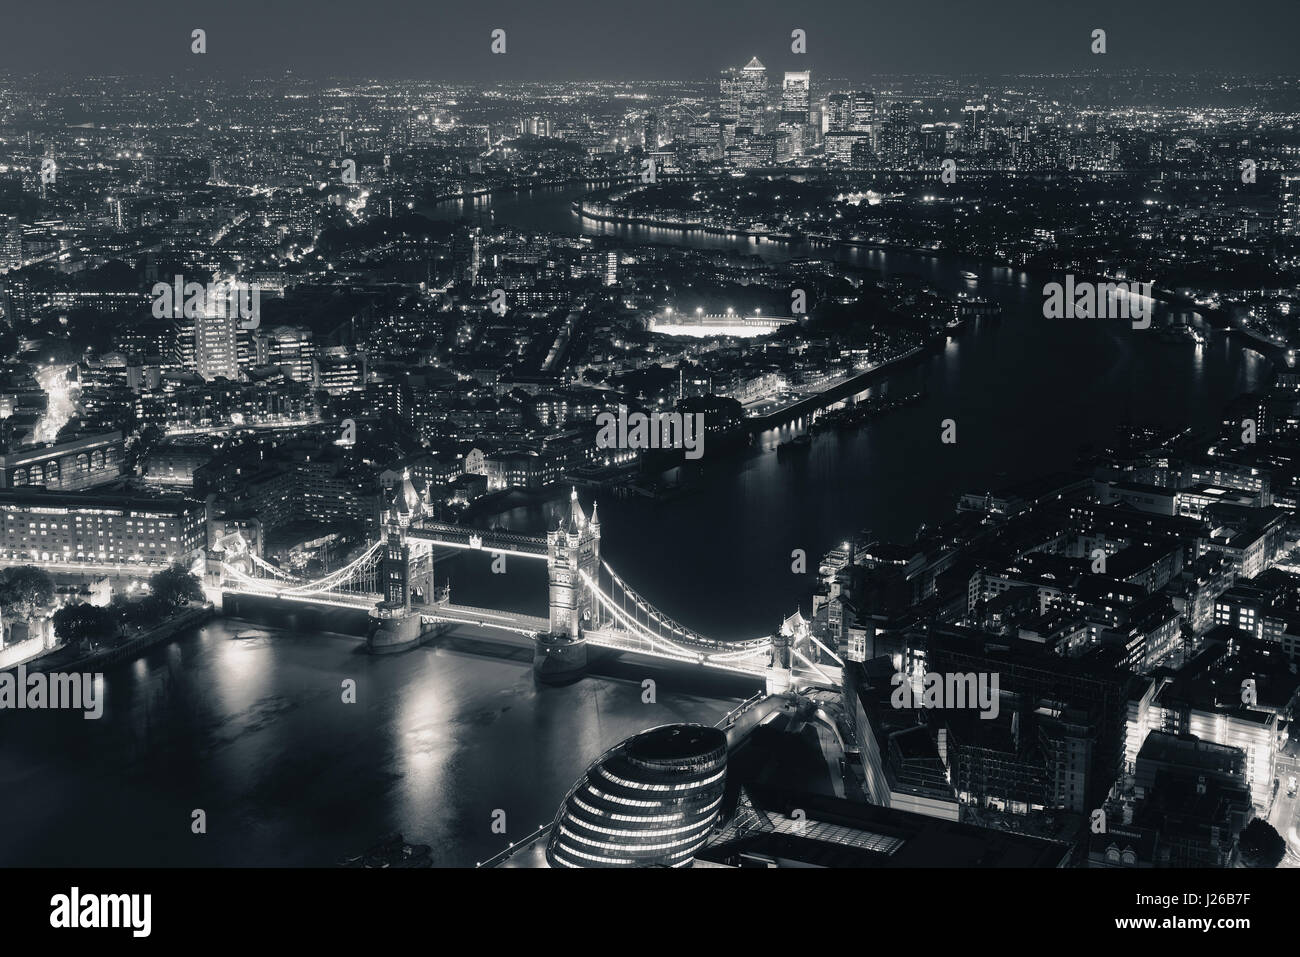 London-Luftbild-Panorama nachts mit städtischen Architekturen und Tower Bridge im BW. Stockfoto